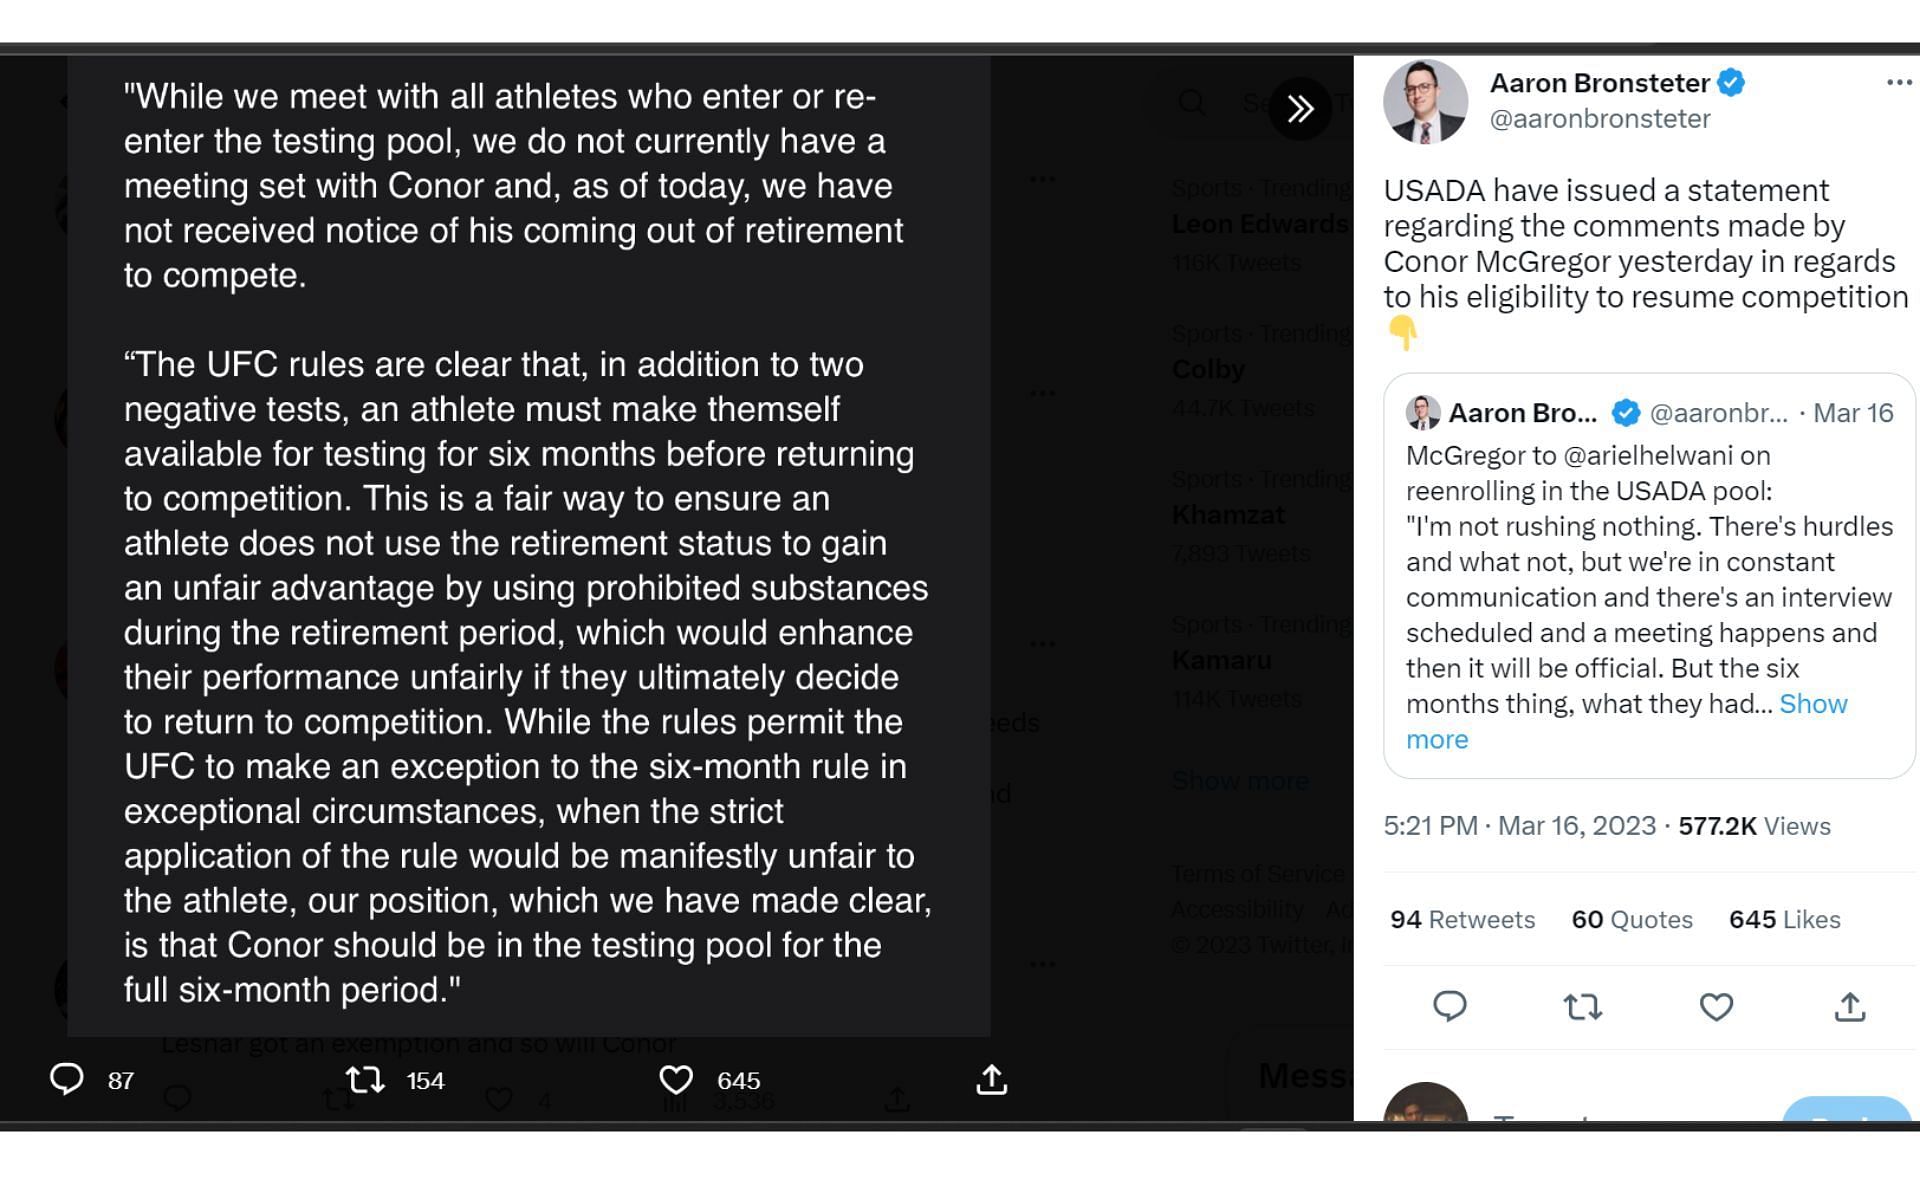 Screenshot of MMA journalist Aaron Bronsteter&#039;s tweet about USADA&#039;s recent statement [Image courtesy: @aaronbronsteter on Twitter]